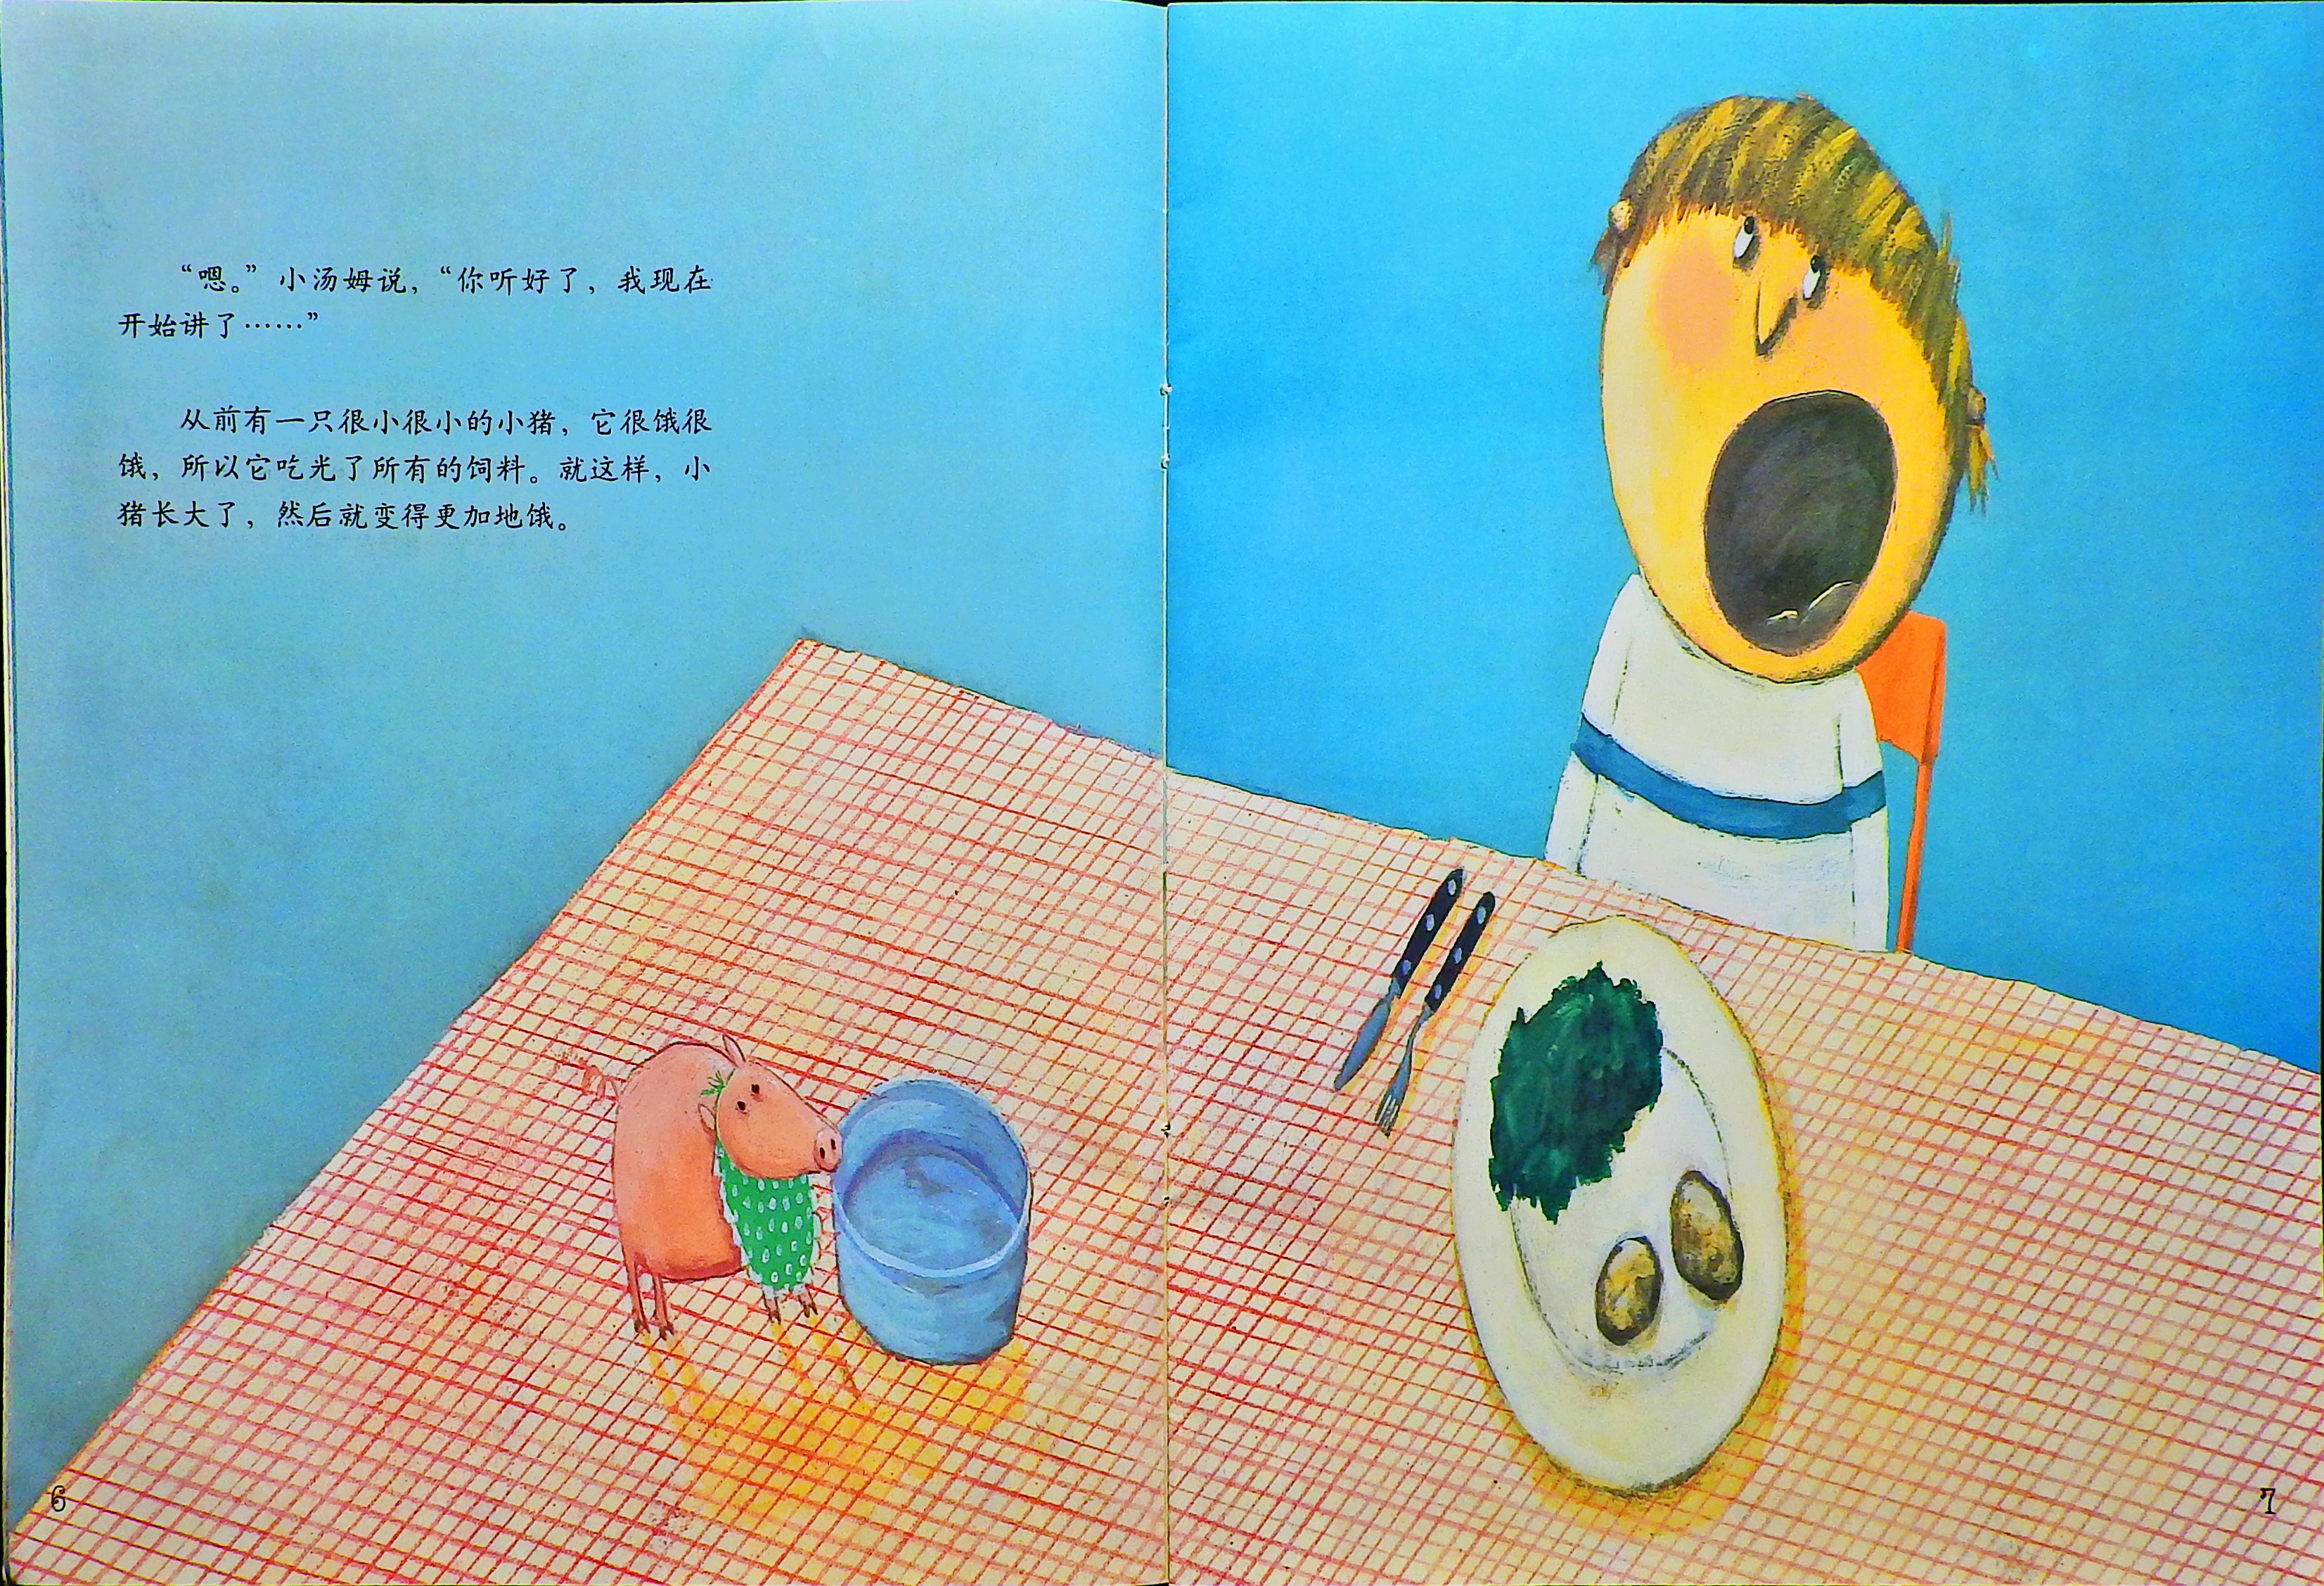 一只很饿很饿的小猪 (07),绘本,绘本故事,绘本阅读,故事书,童书,图画书,课外阅读